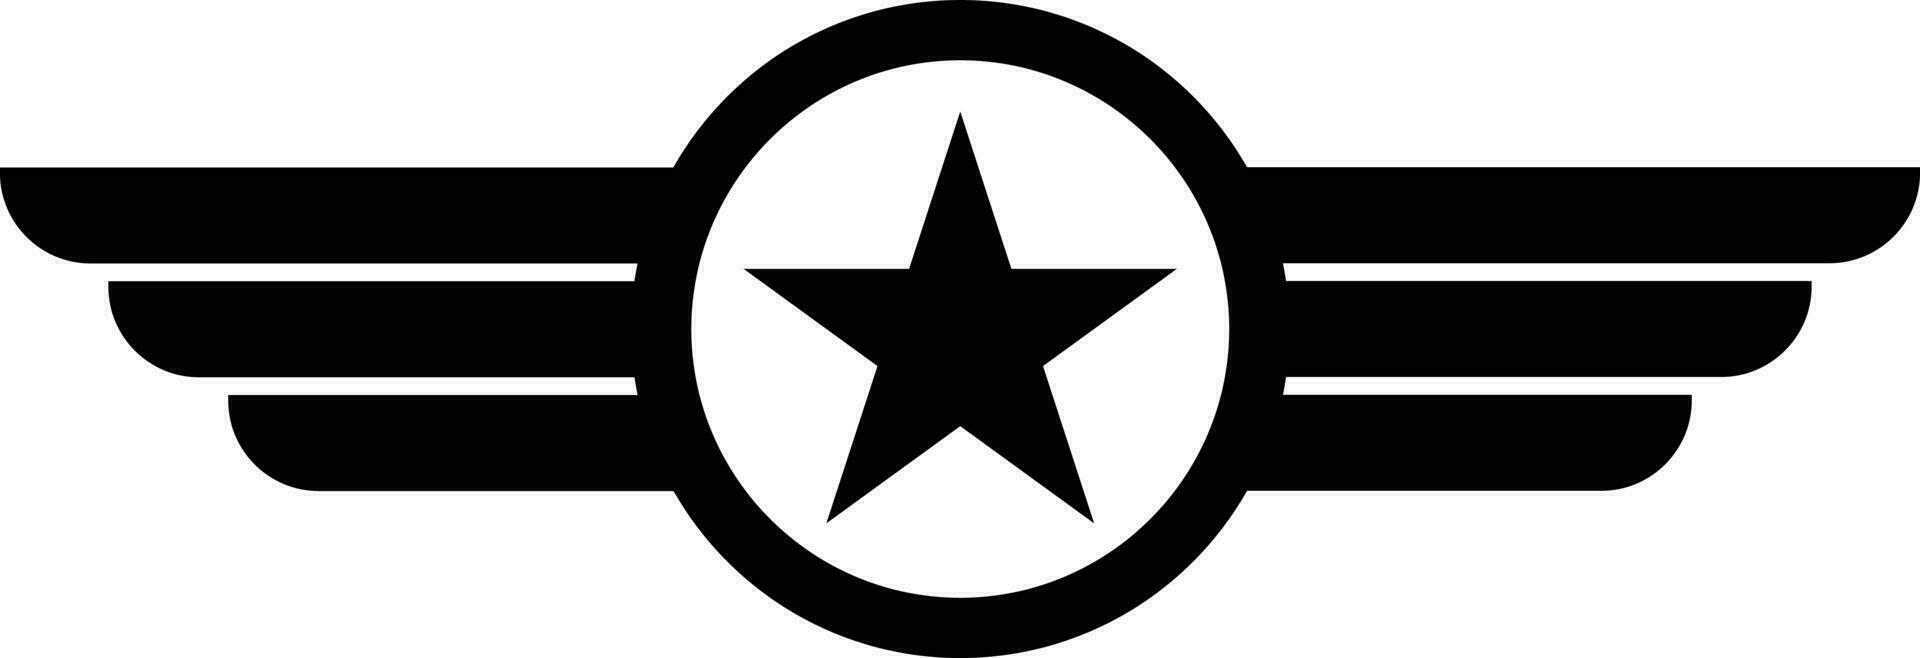 Star mit Flügel Logo Vektor Illustration. Militär- und Heer geflügelt Abzeichen. Luftfahrt Flügel Symbol